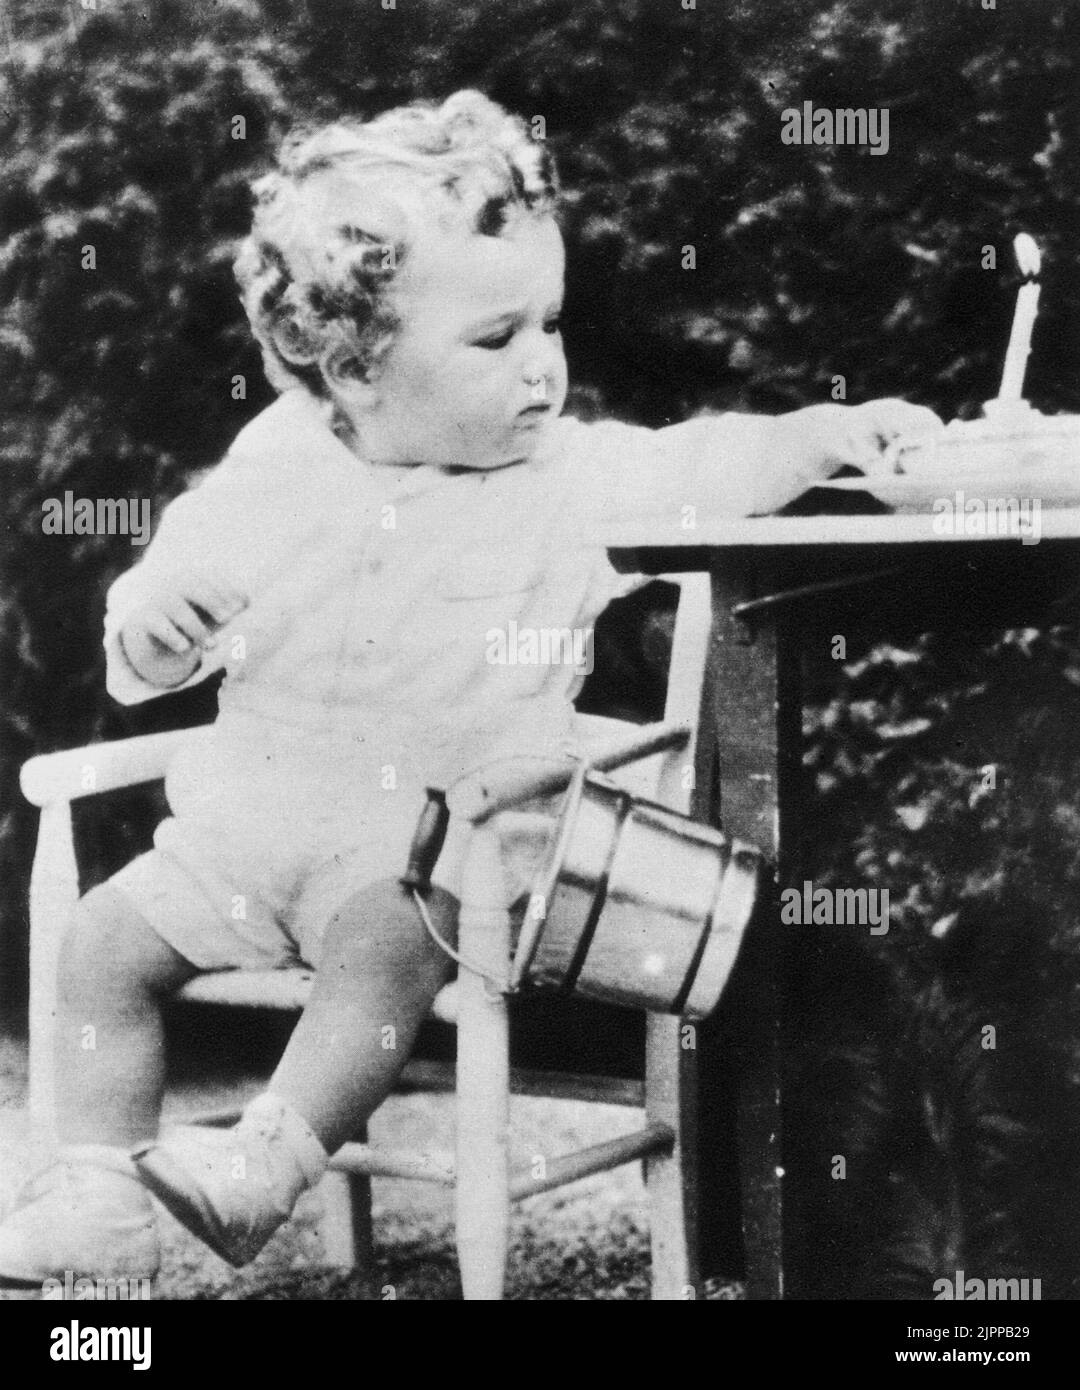 1932 , USA : Das kleine Kind CHARLES AUGUSTUS LINDBERGH Jr Sohn des amerikanischen Fliegerhelden Charles Augustus LINDBERGH ( 1902 - 1974 ) , Entführer und im Alter von 3 Jahren getötet- AVIAZIONE - AVIATORE - EROE - PIONIERE - Pioniere - rapimento - entführt - Baby - bambino rapito e ucciso ---- Archivio GBB Stockfoto